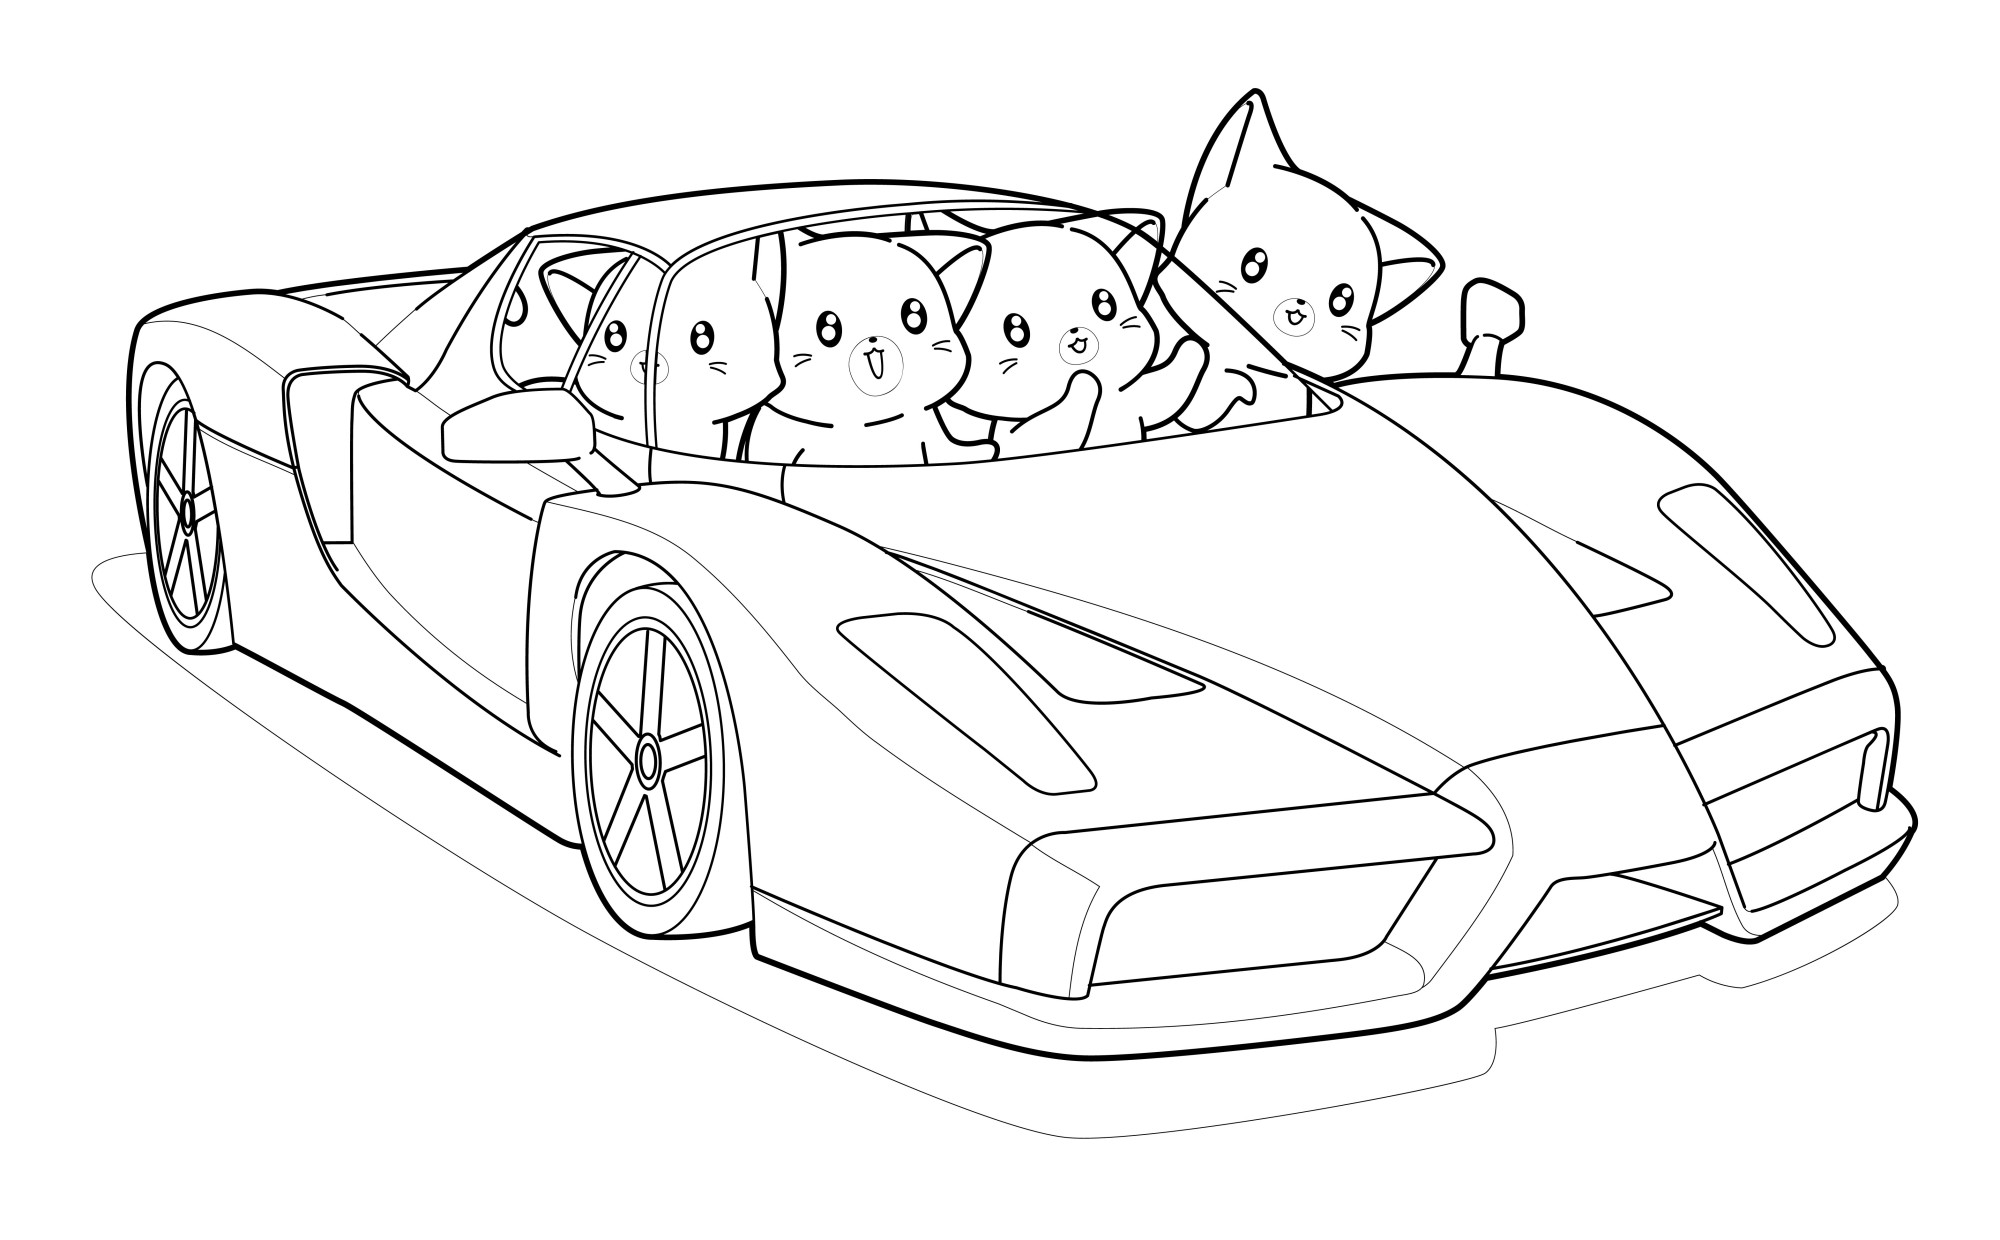 Раскраска для детей: гоночная машина с котятами